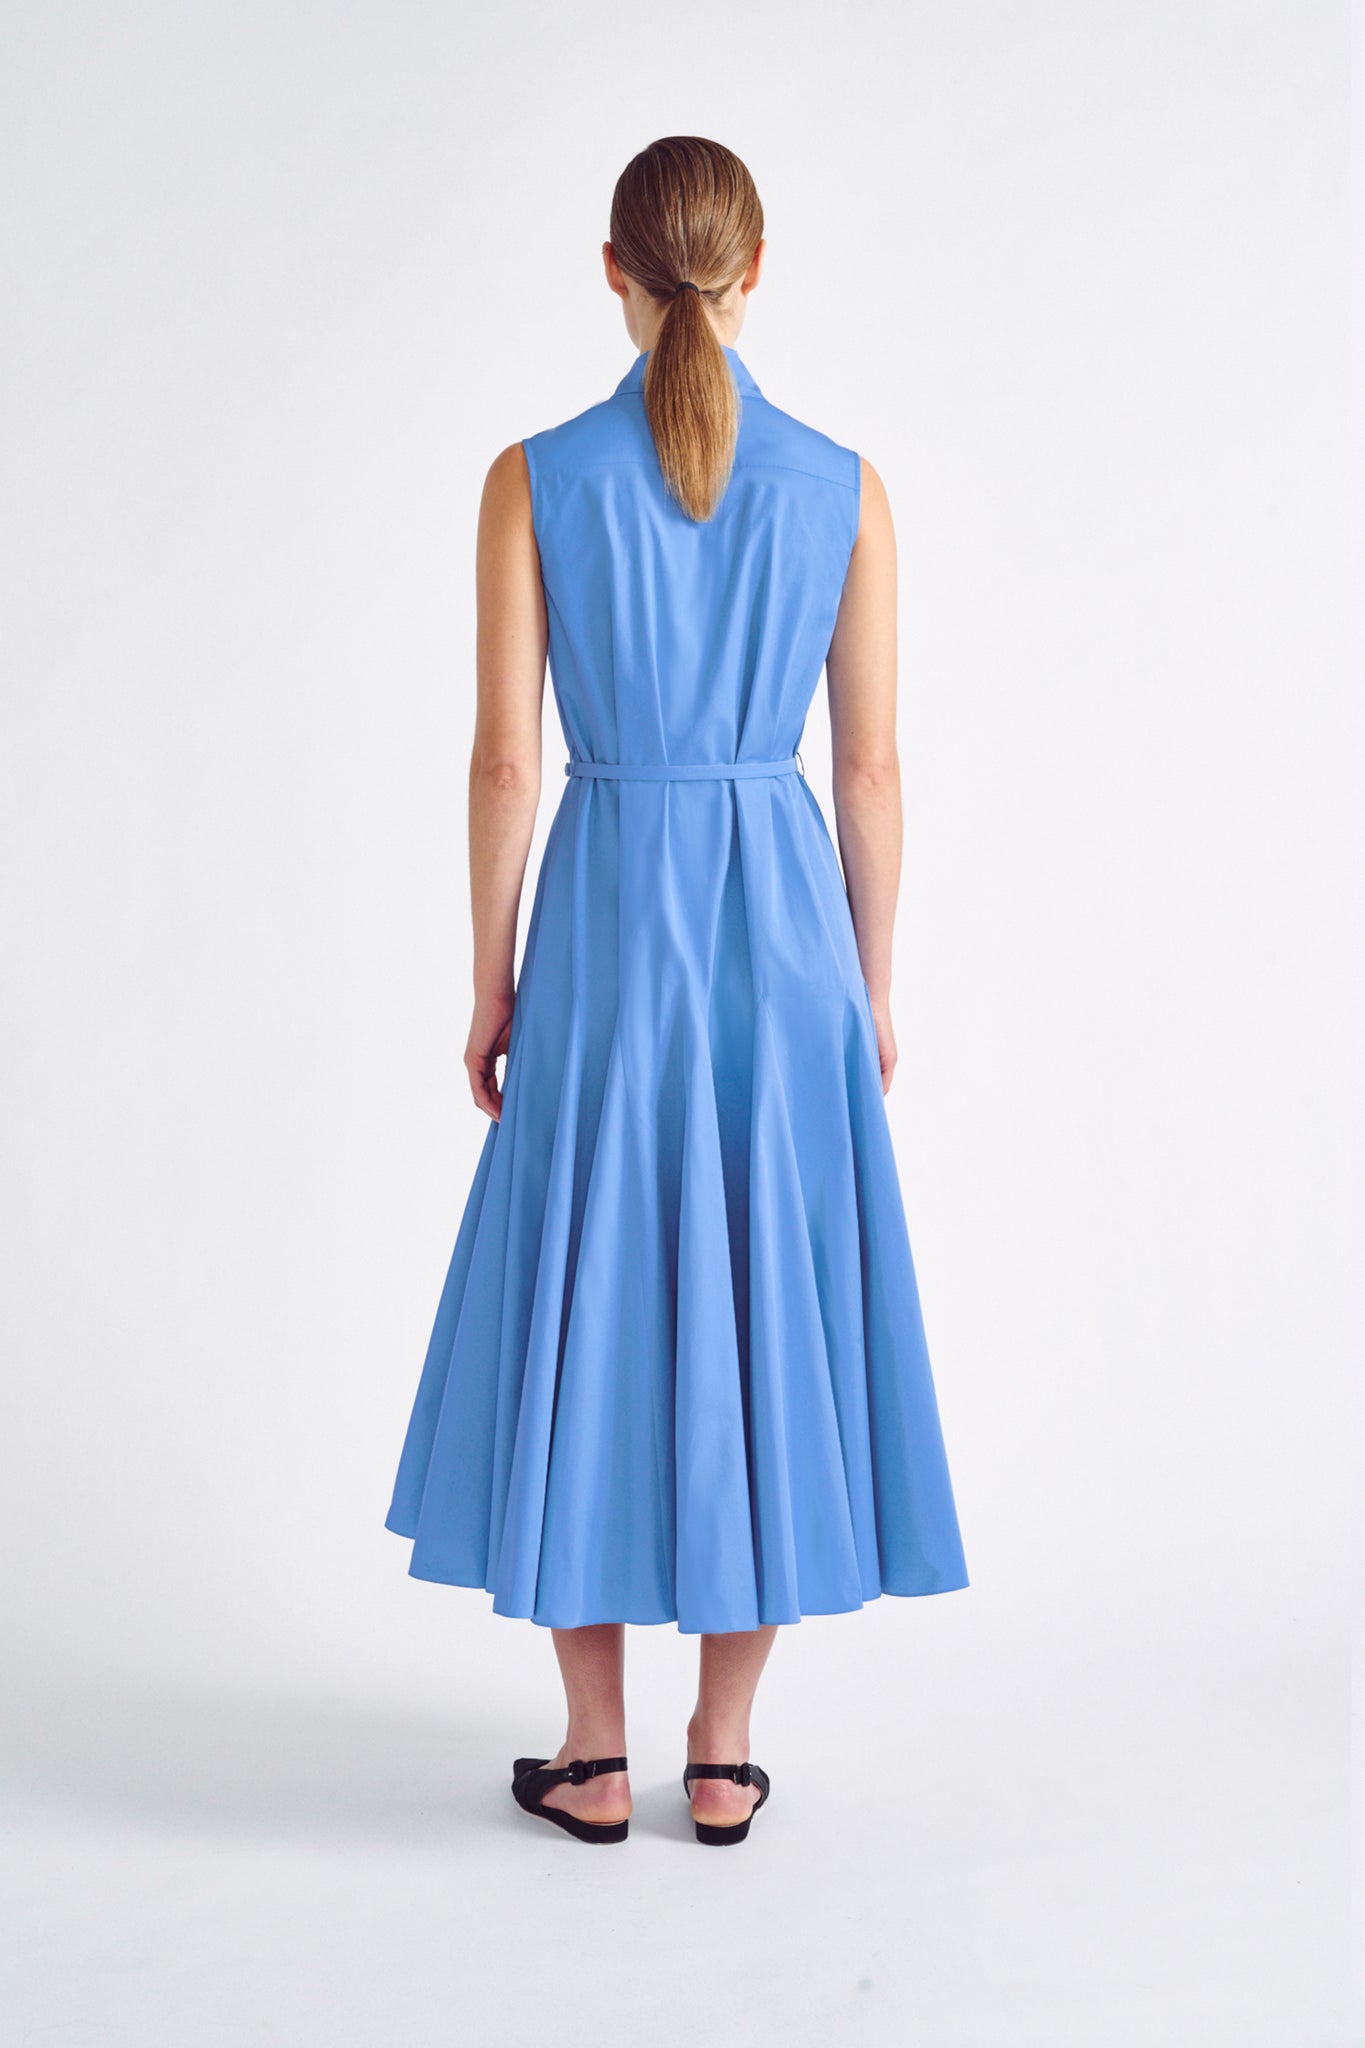 Monique Dress, Blue Cotton Sleeveless Shirt Dress